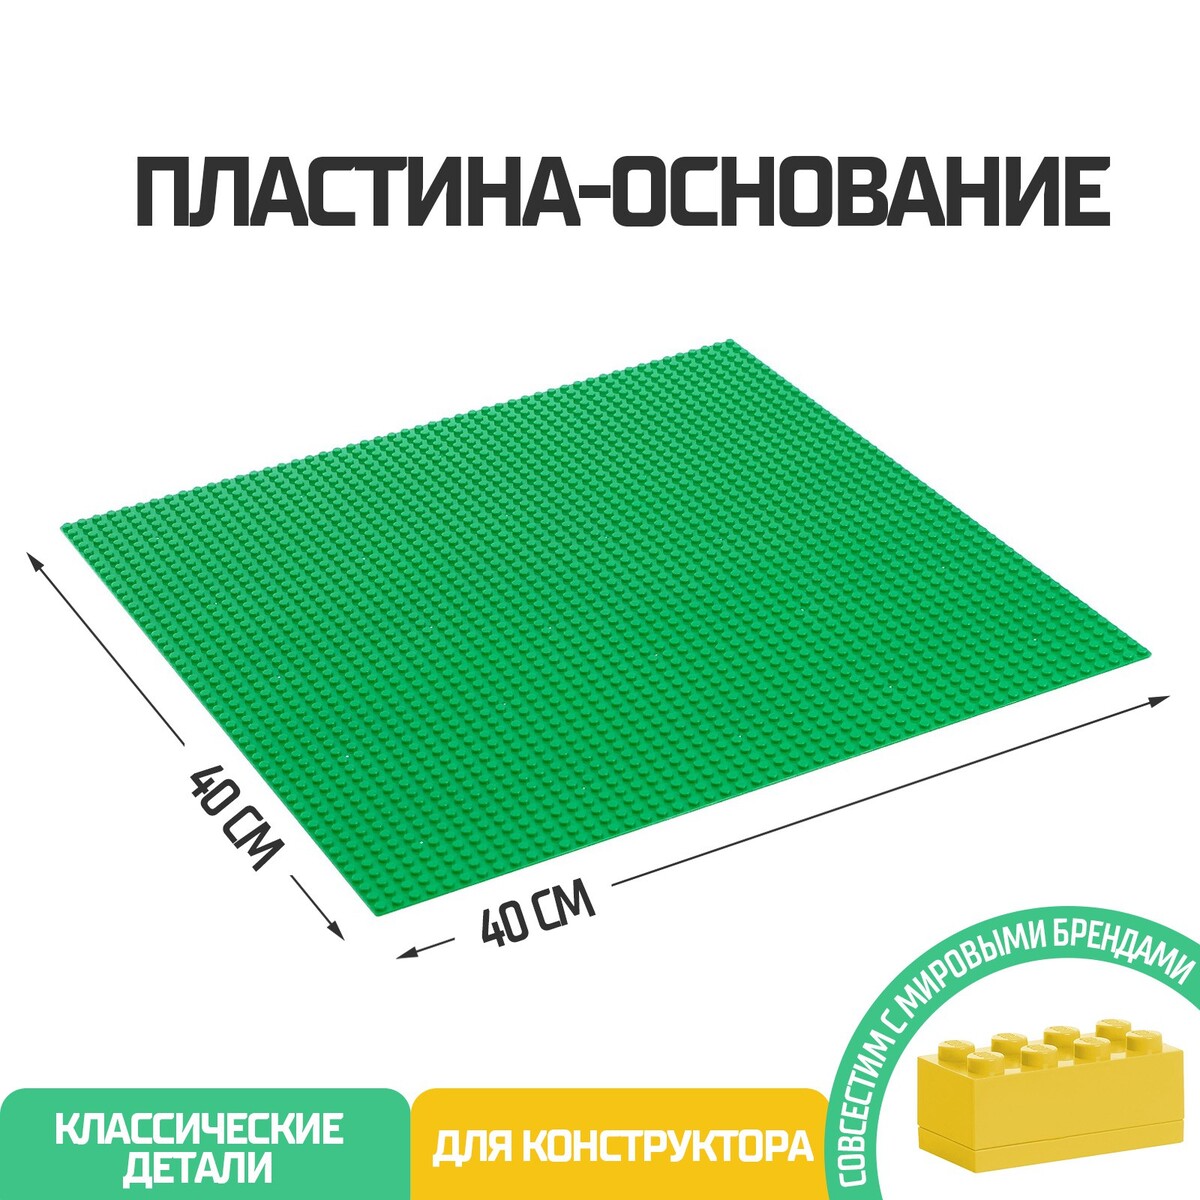 Пластина-основание для конструктора, 40 х 40 см, цвет зеленый фитбол d55см star fit с ручным насосом gb 109 зеленый